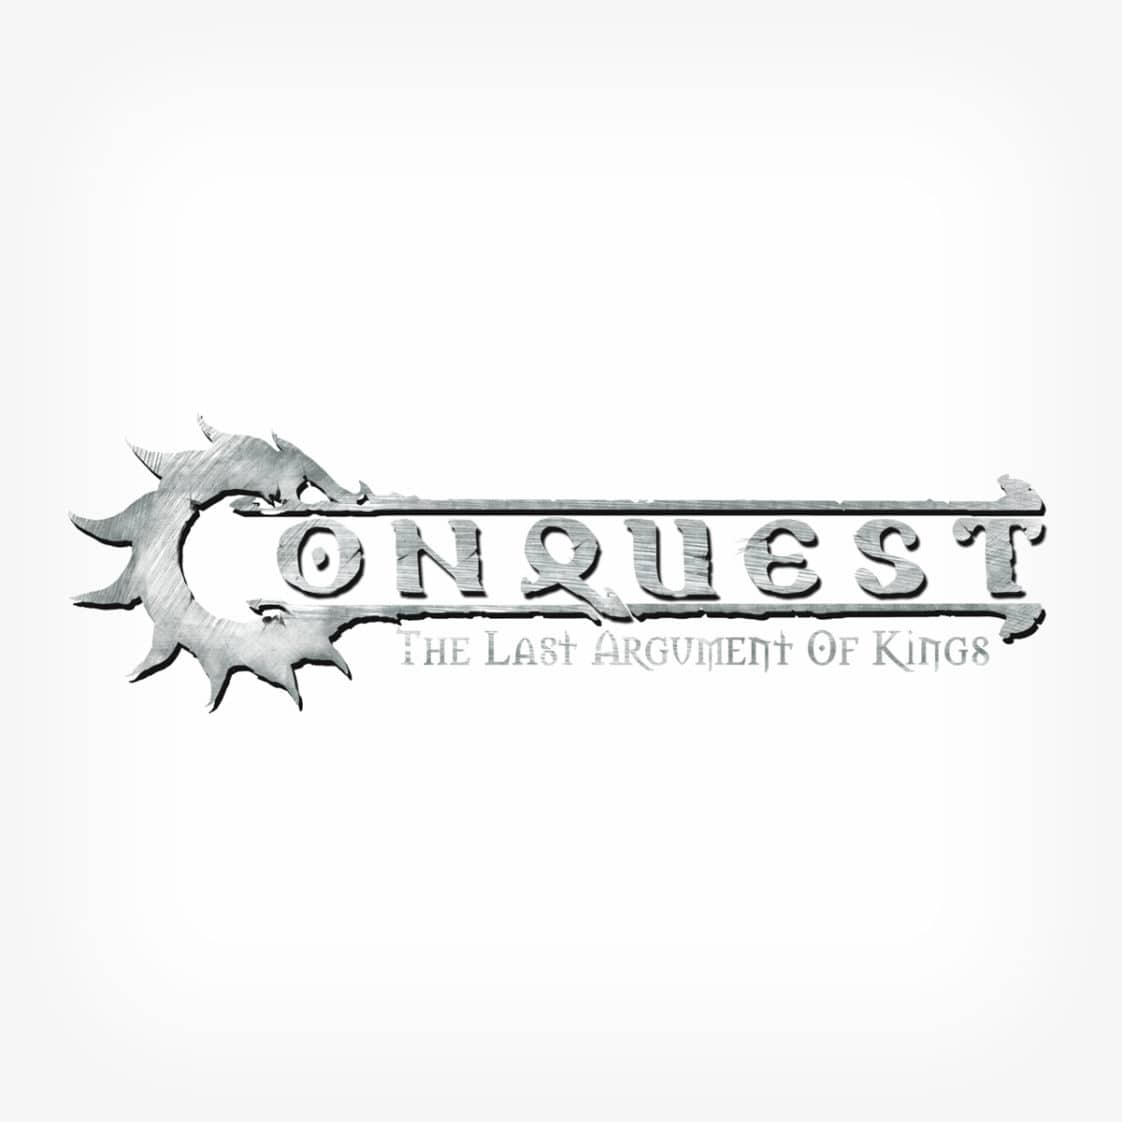 Conquest Logo